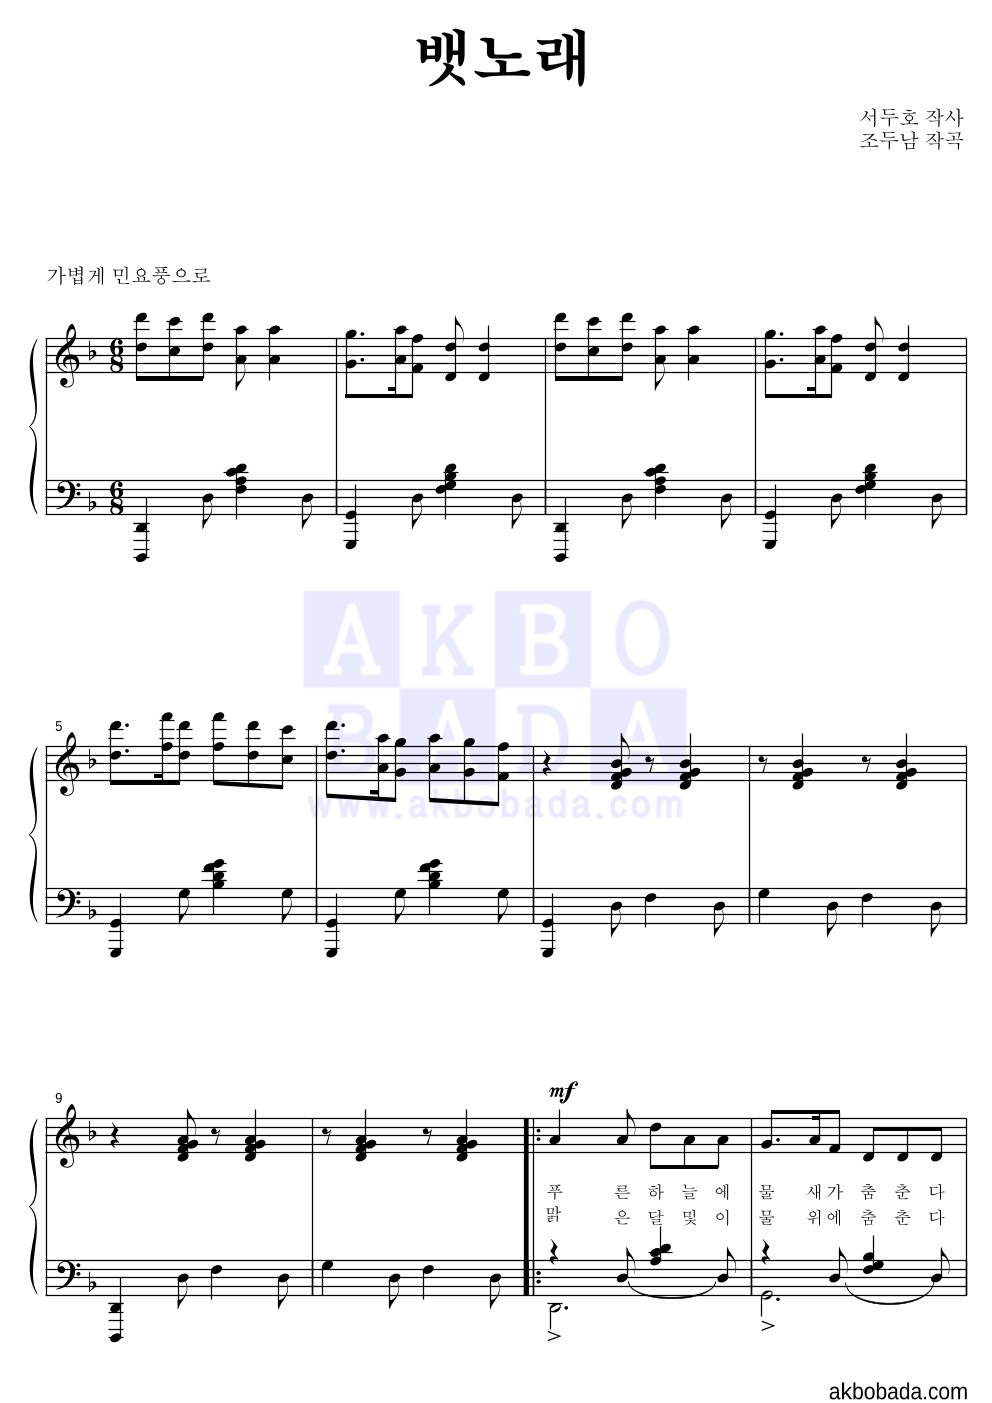 조두남 - 뱃노래 피아노 2단 악보 